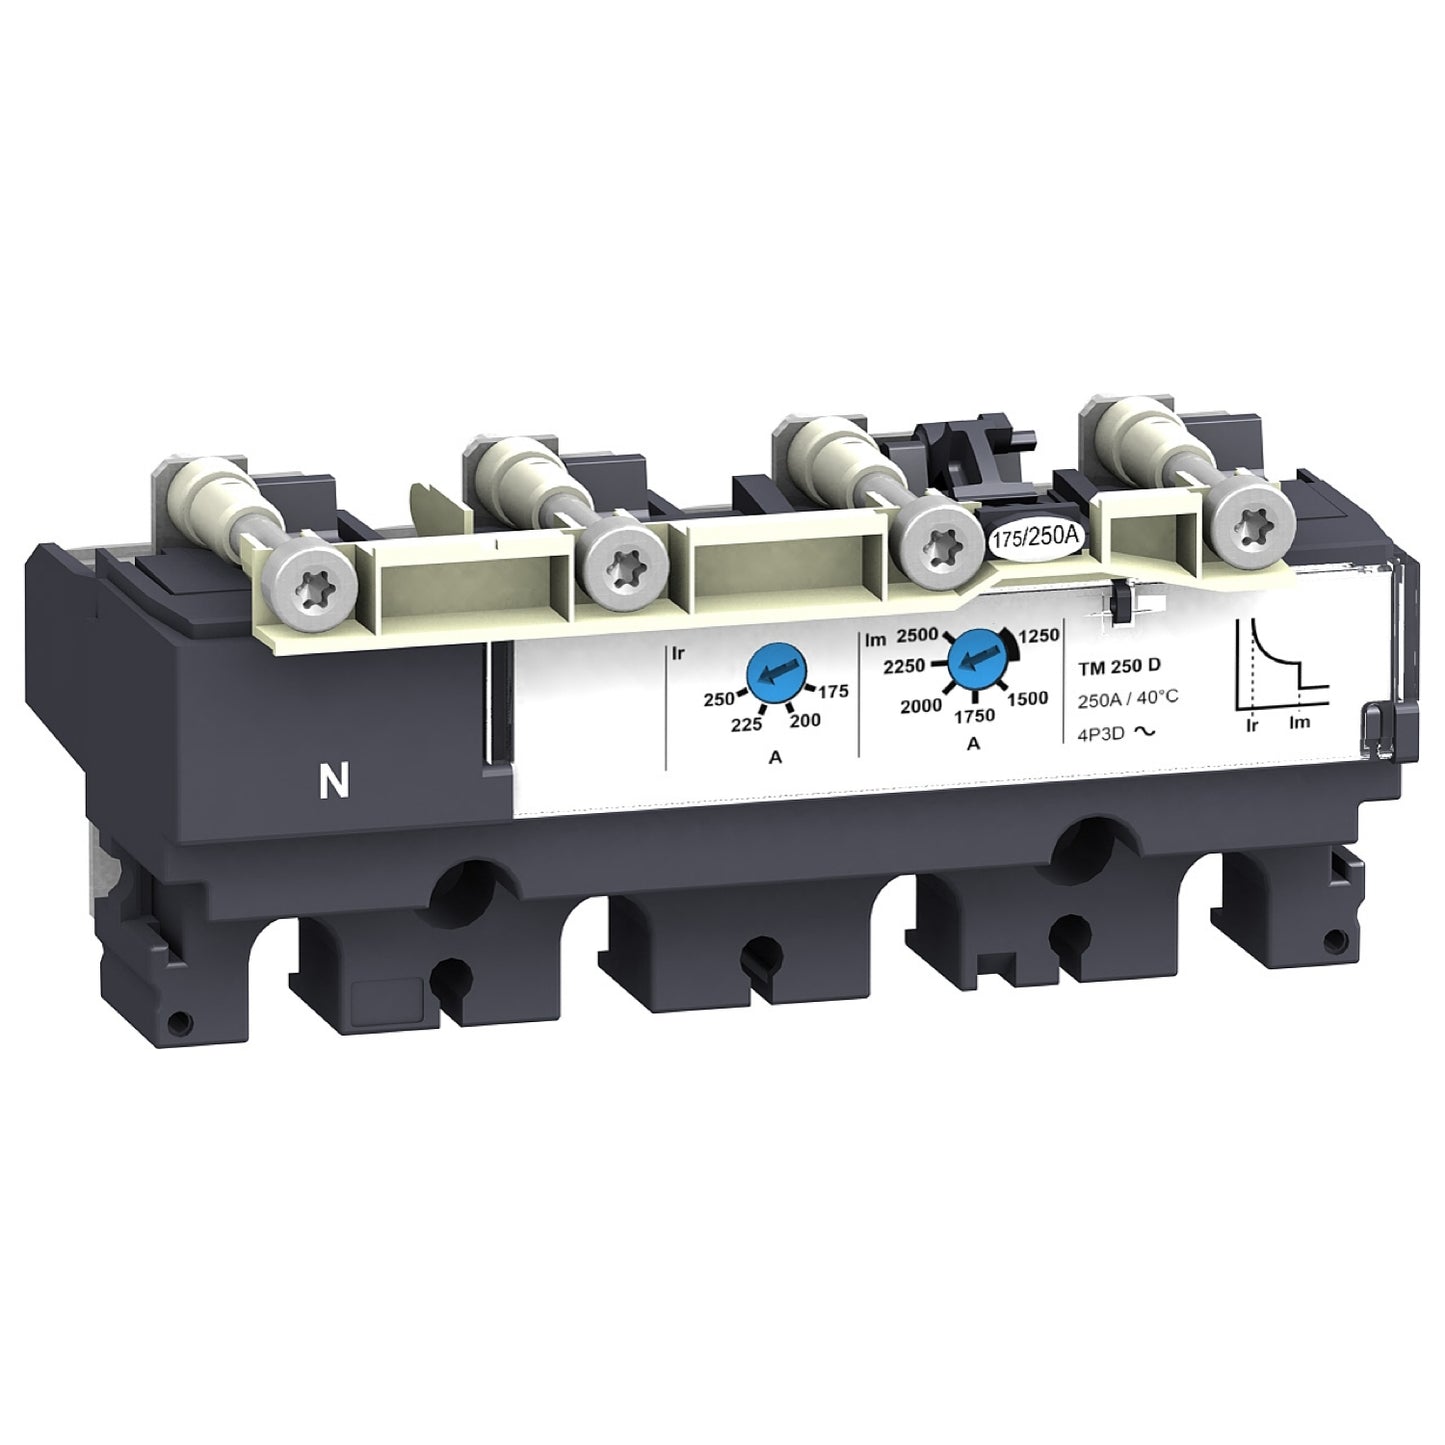 LV430441 Trip unit TM125D for NSX160/250 circuit breakers